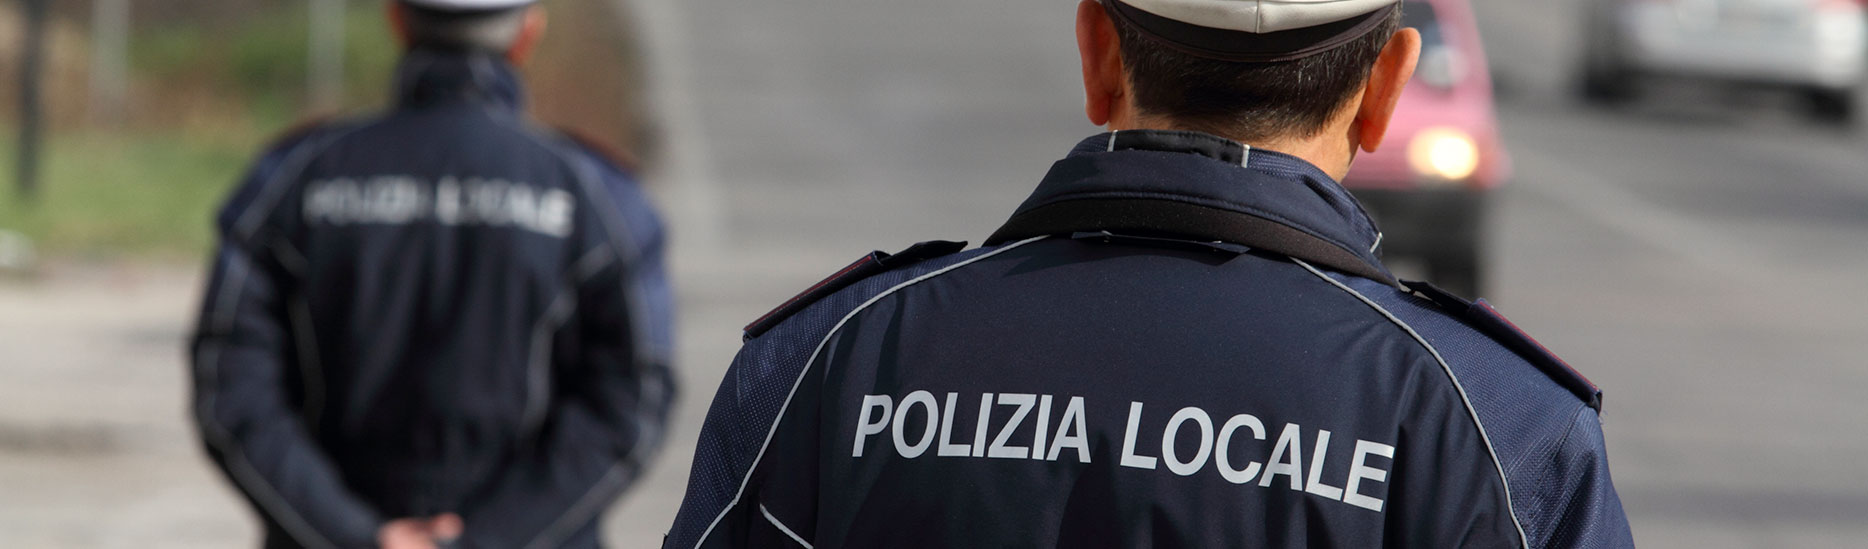 Area Polizia Locale - Comune di Urgnano